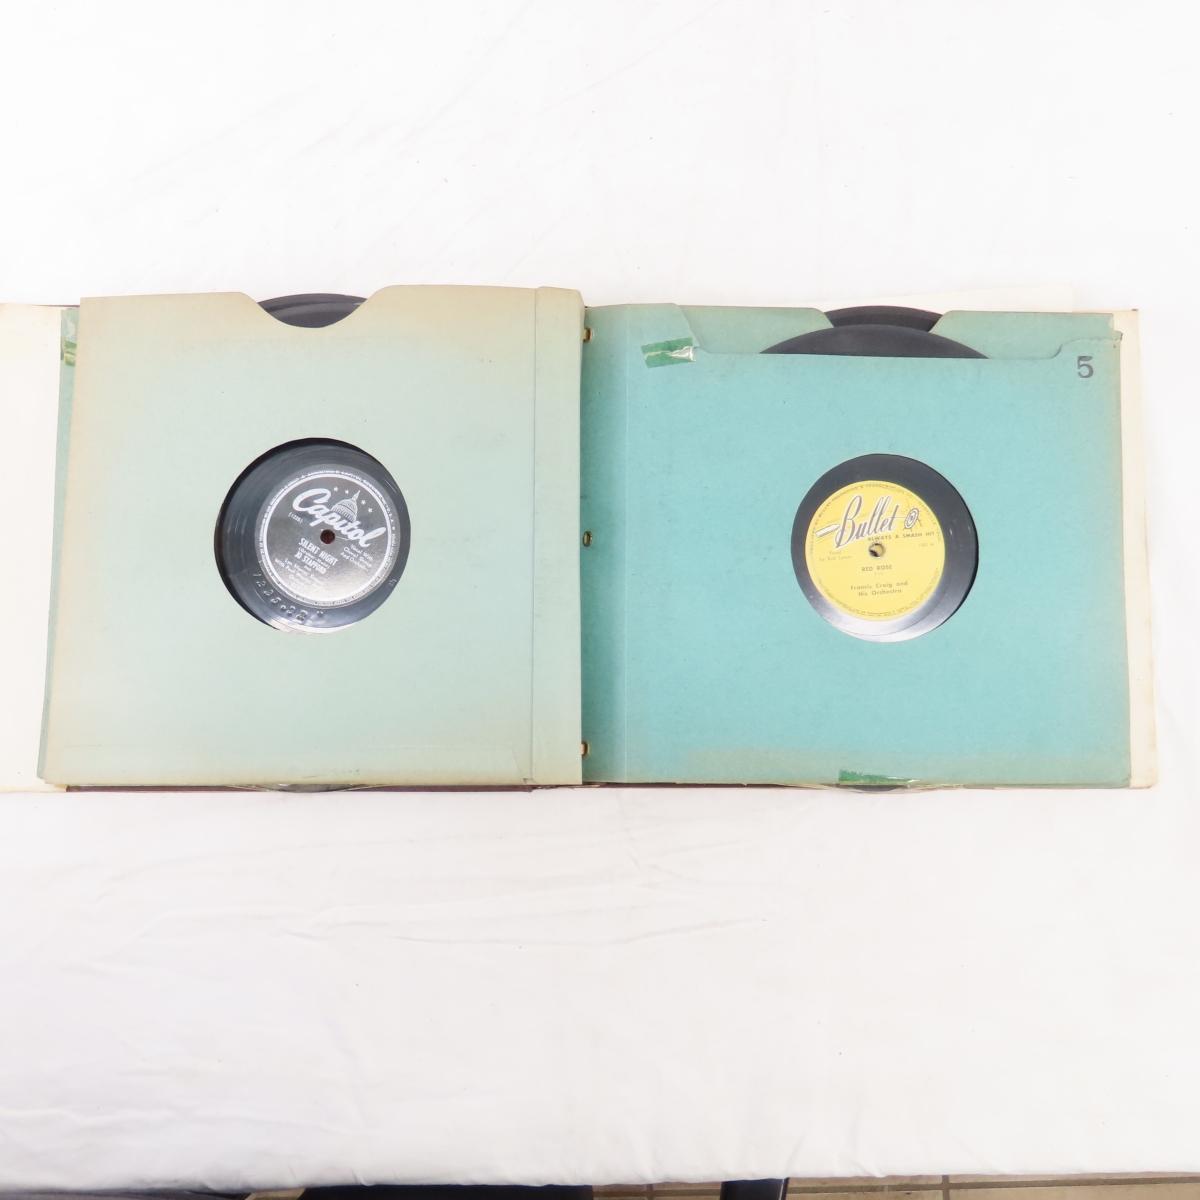 15 Books of Antique Record Albums